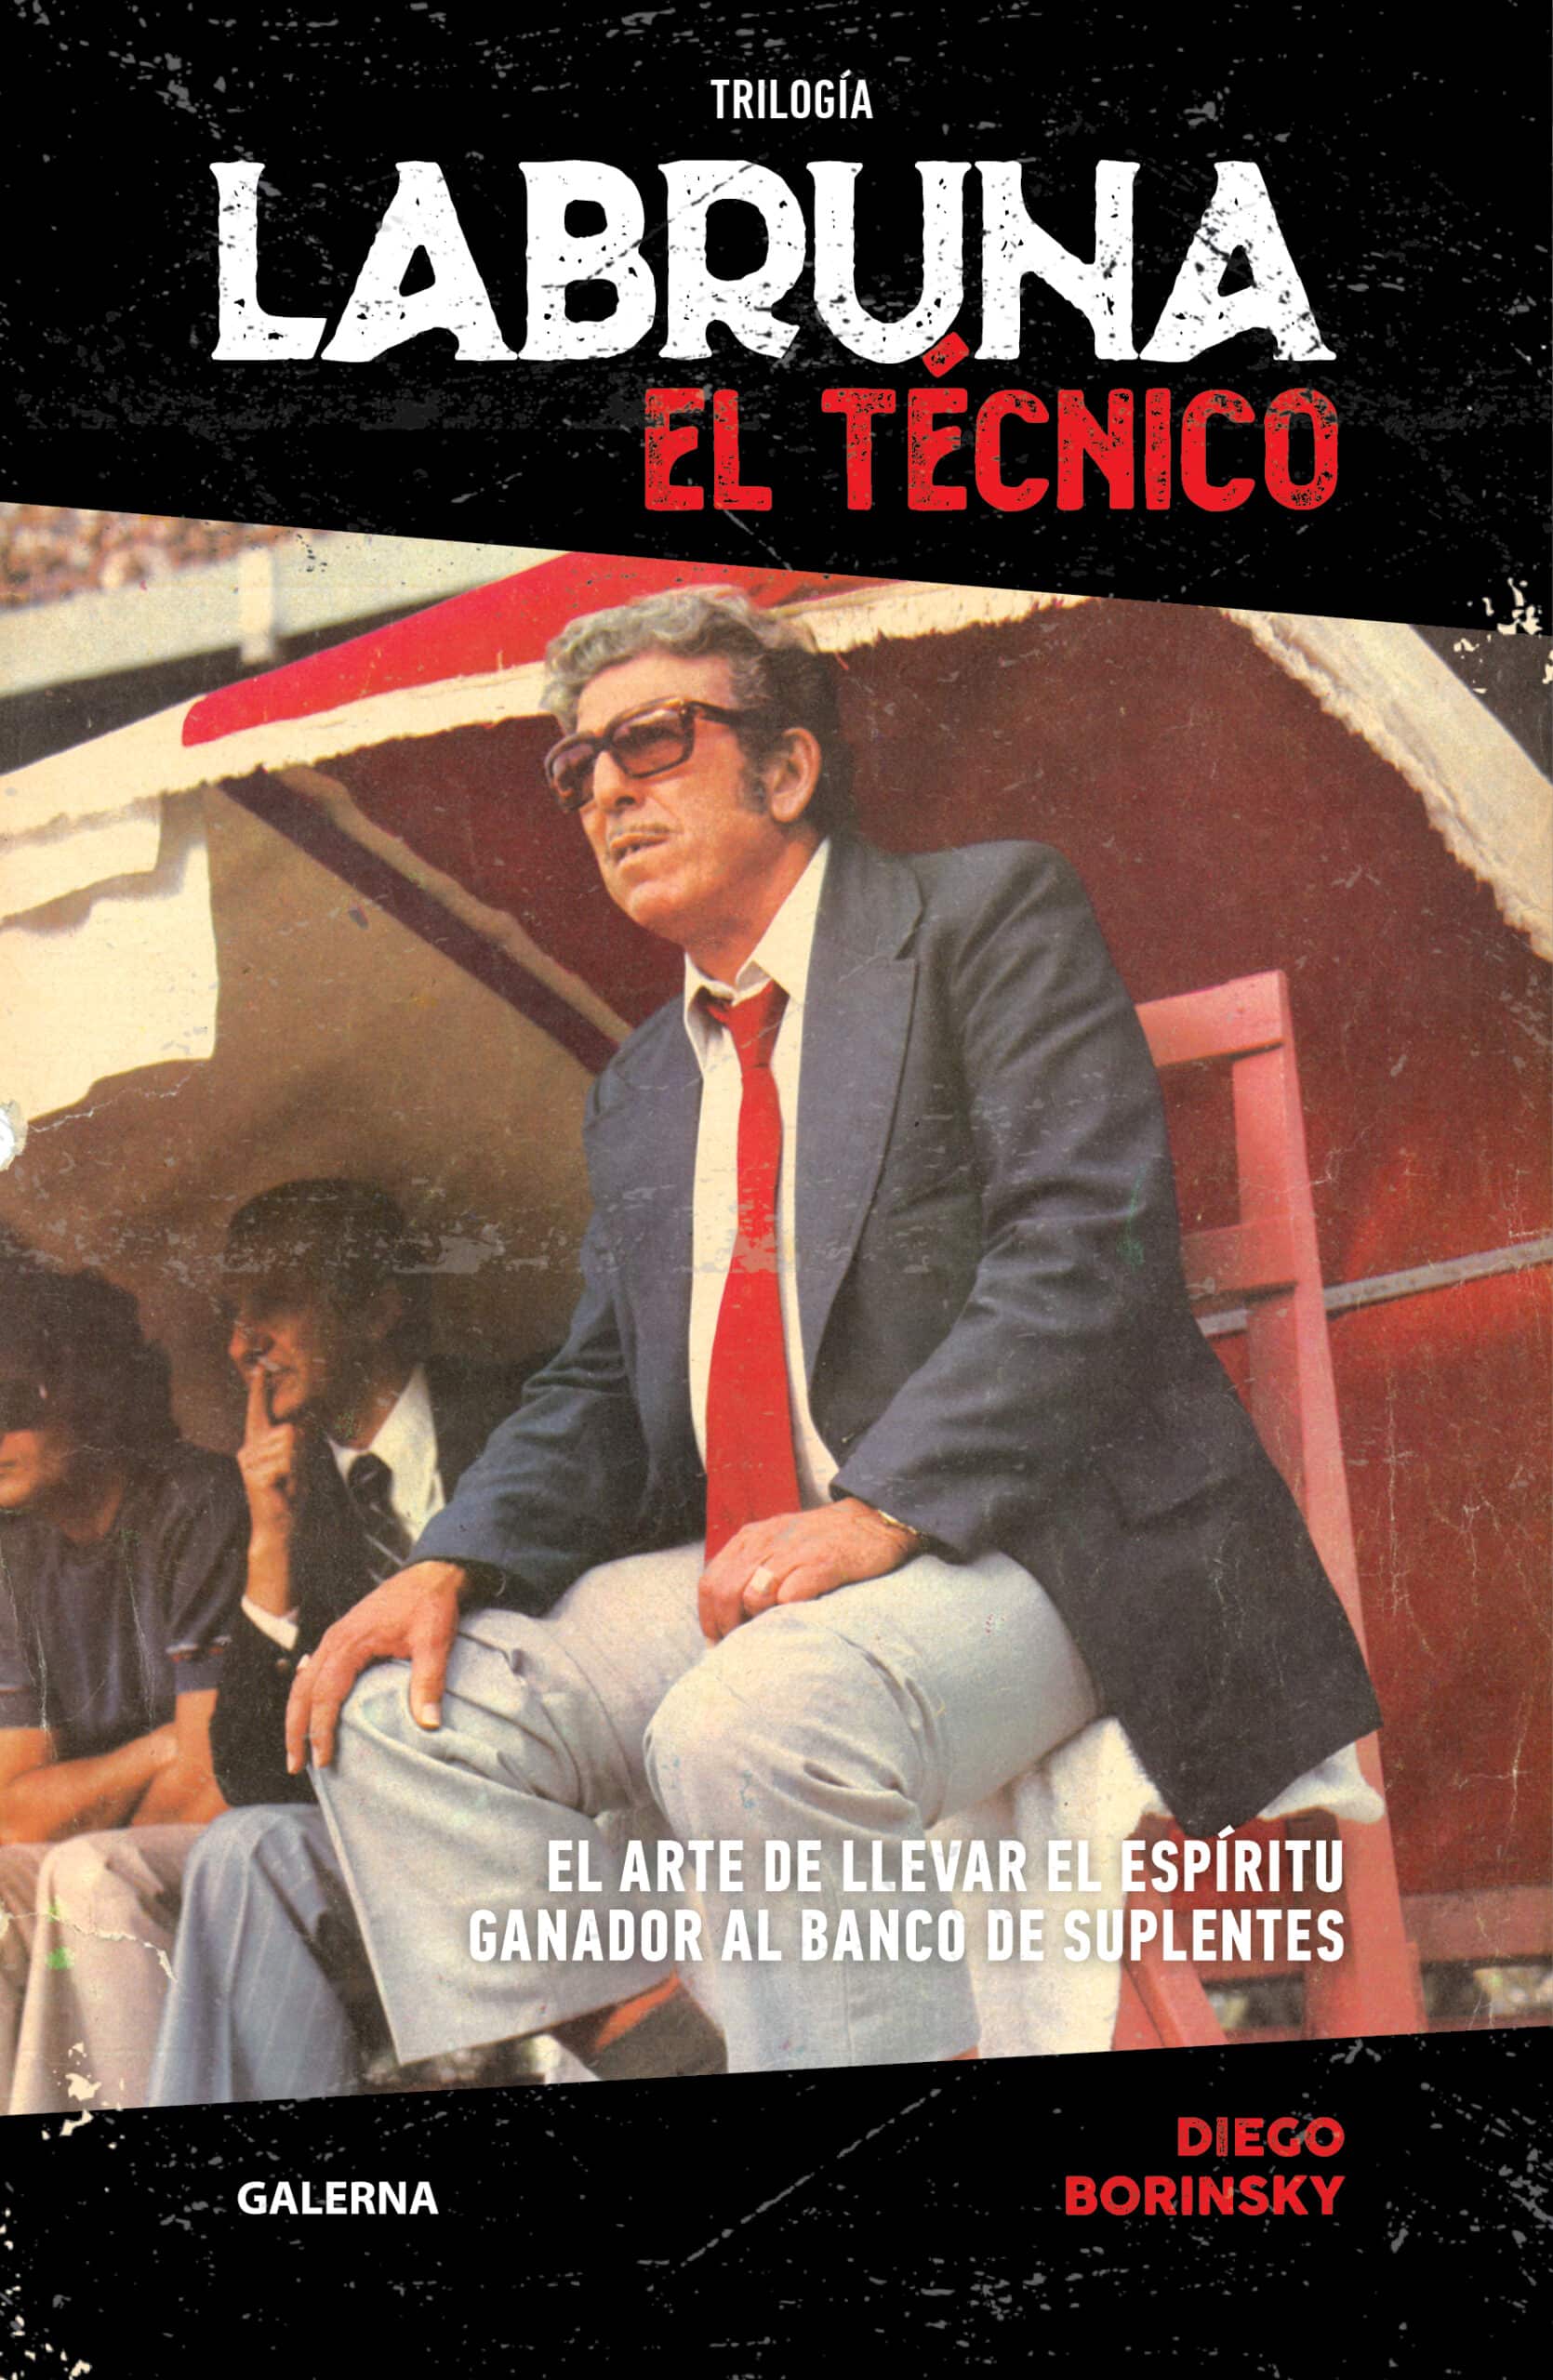 Cover image for Trilogía Labruna. El técnico